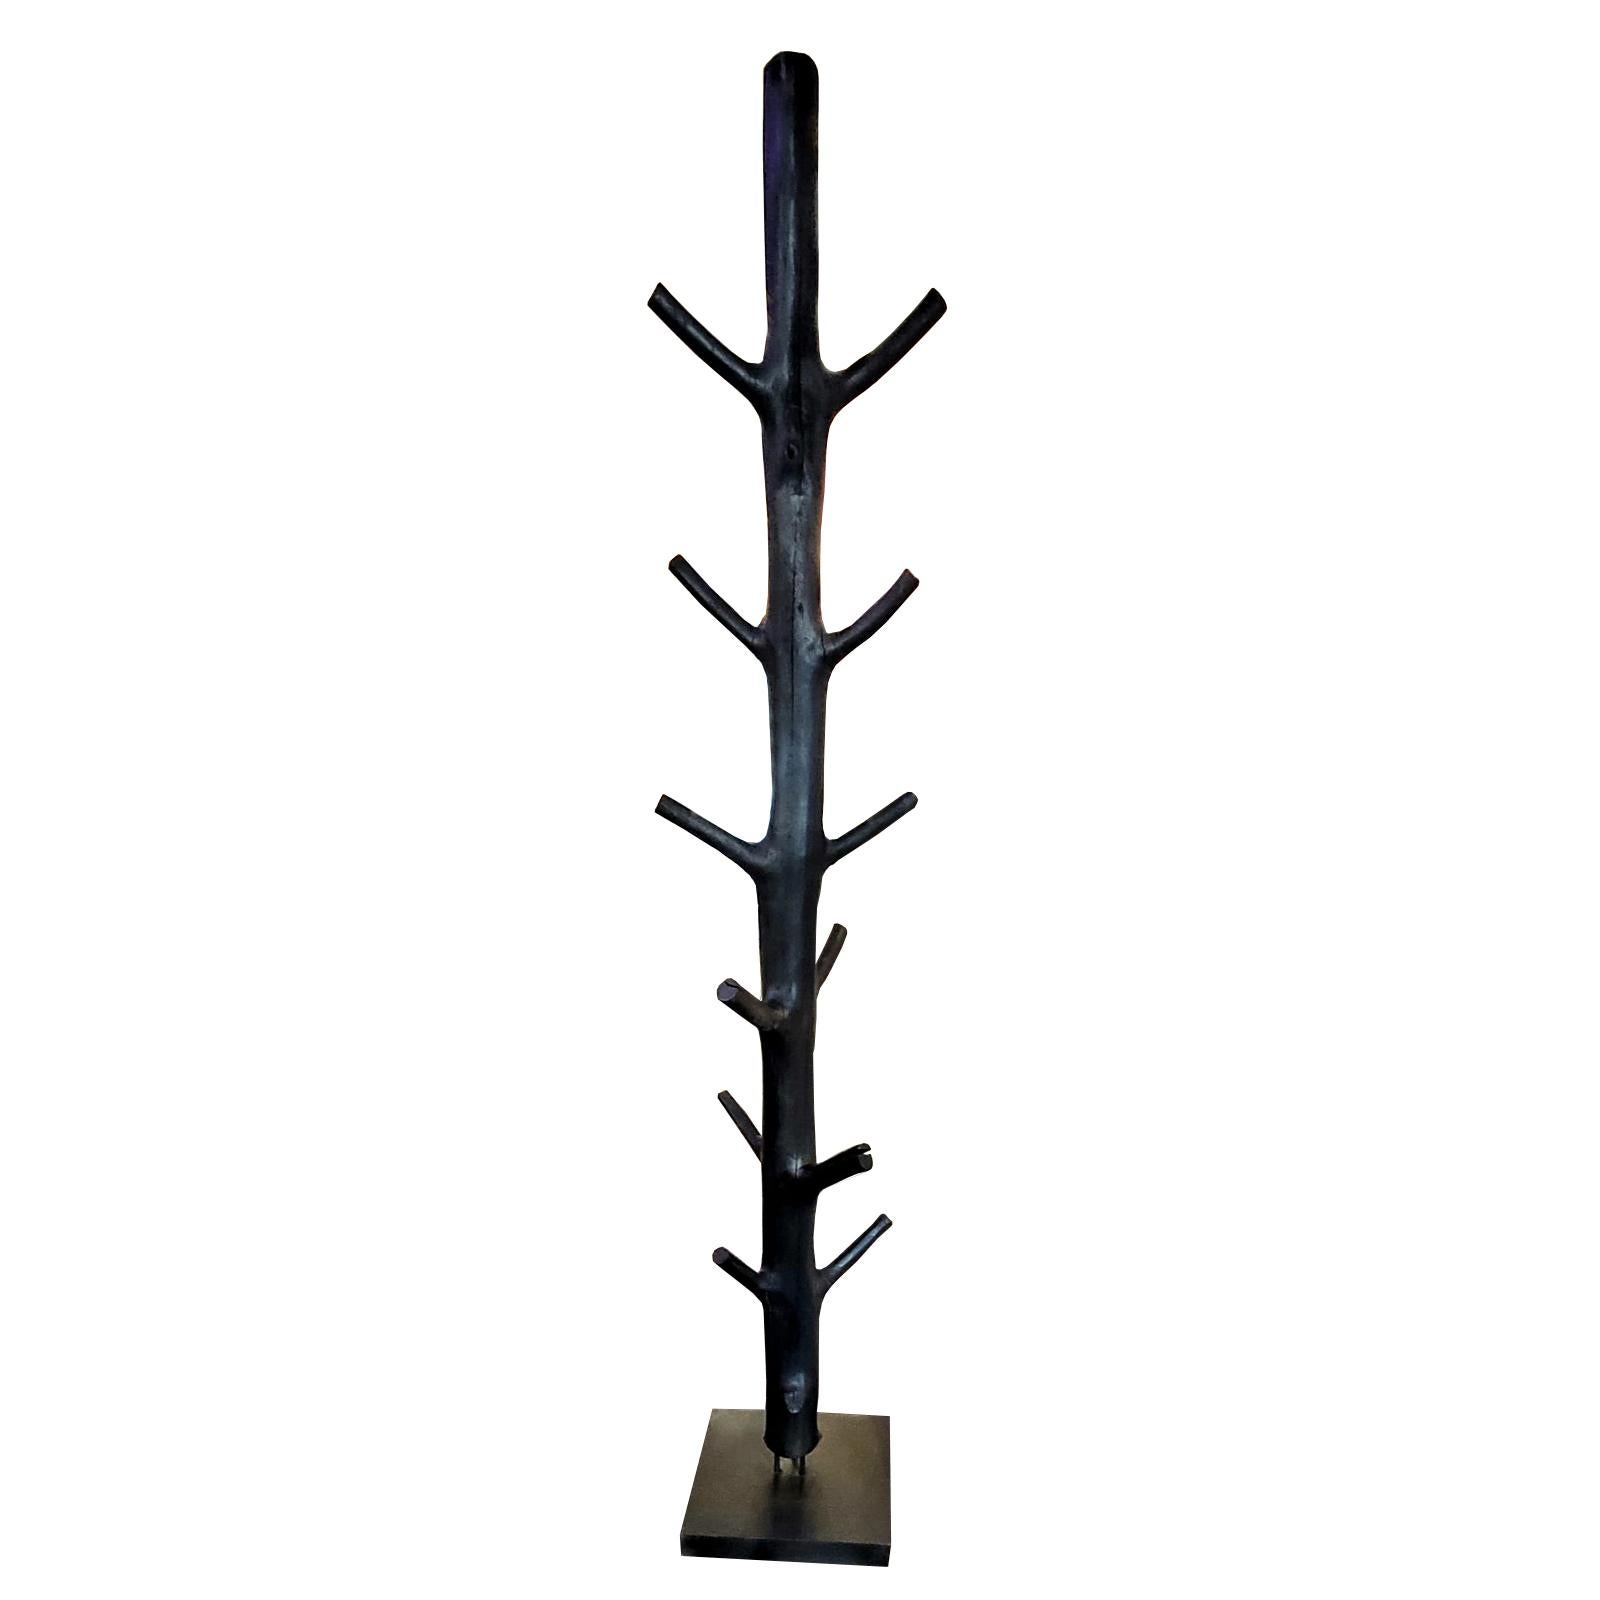 Garderobe geschwärzter Holzbaum aus poliertem Naturholz
baum mit schwarzer Farbe. Auf schwarzem Eisensockel. Jedes Stück ist einzigartig und 
können leicht variieren.